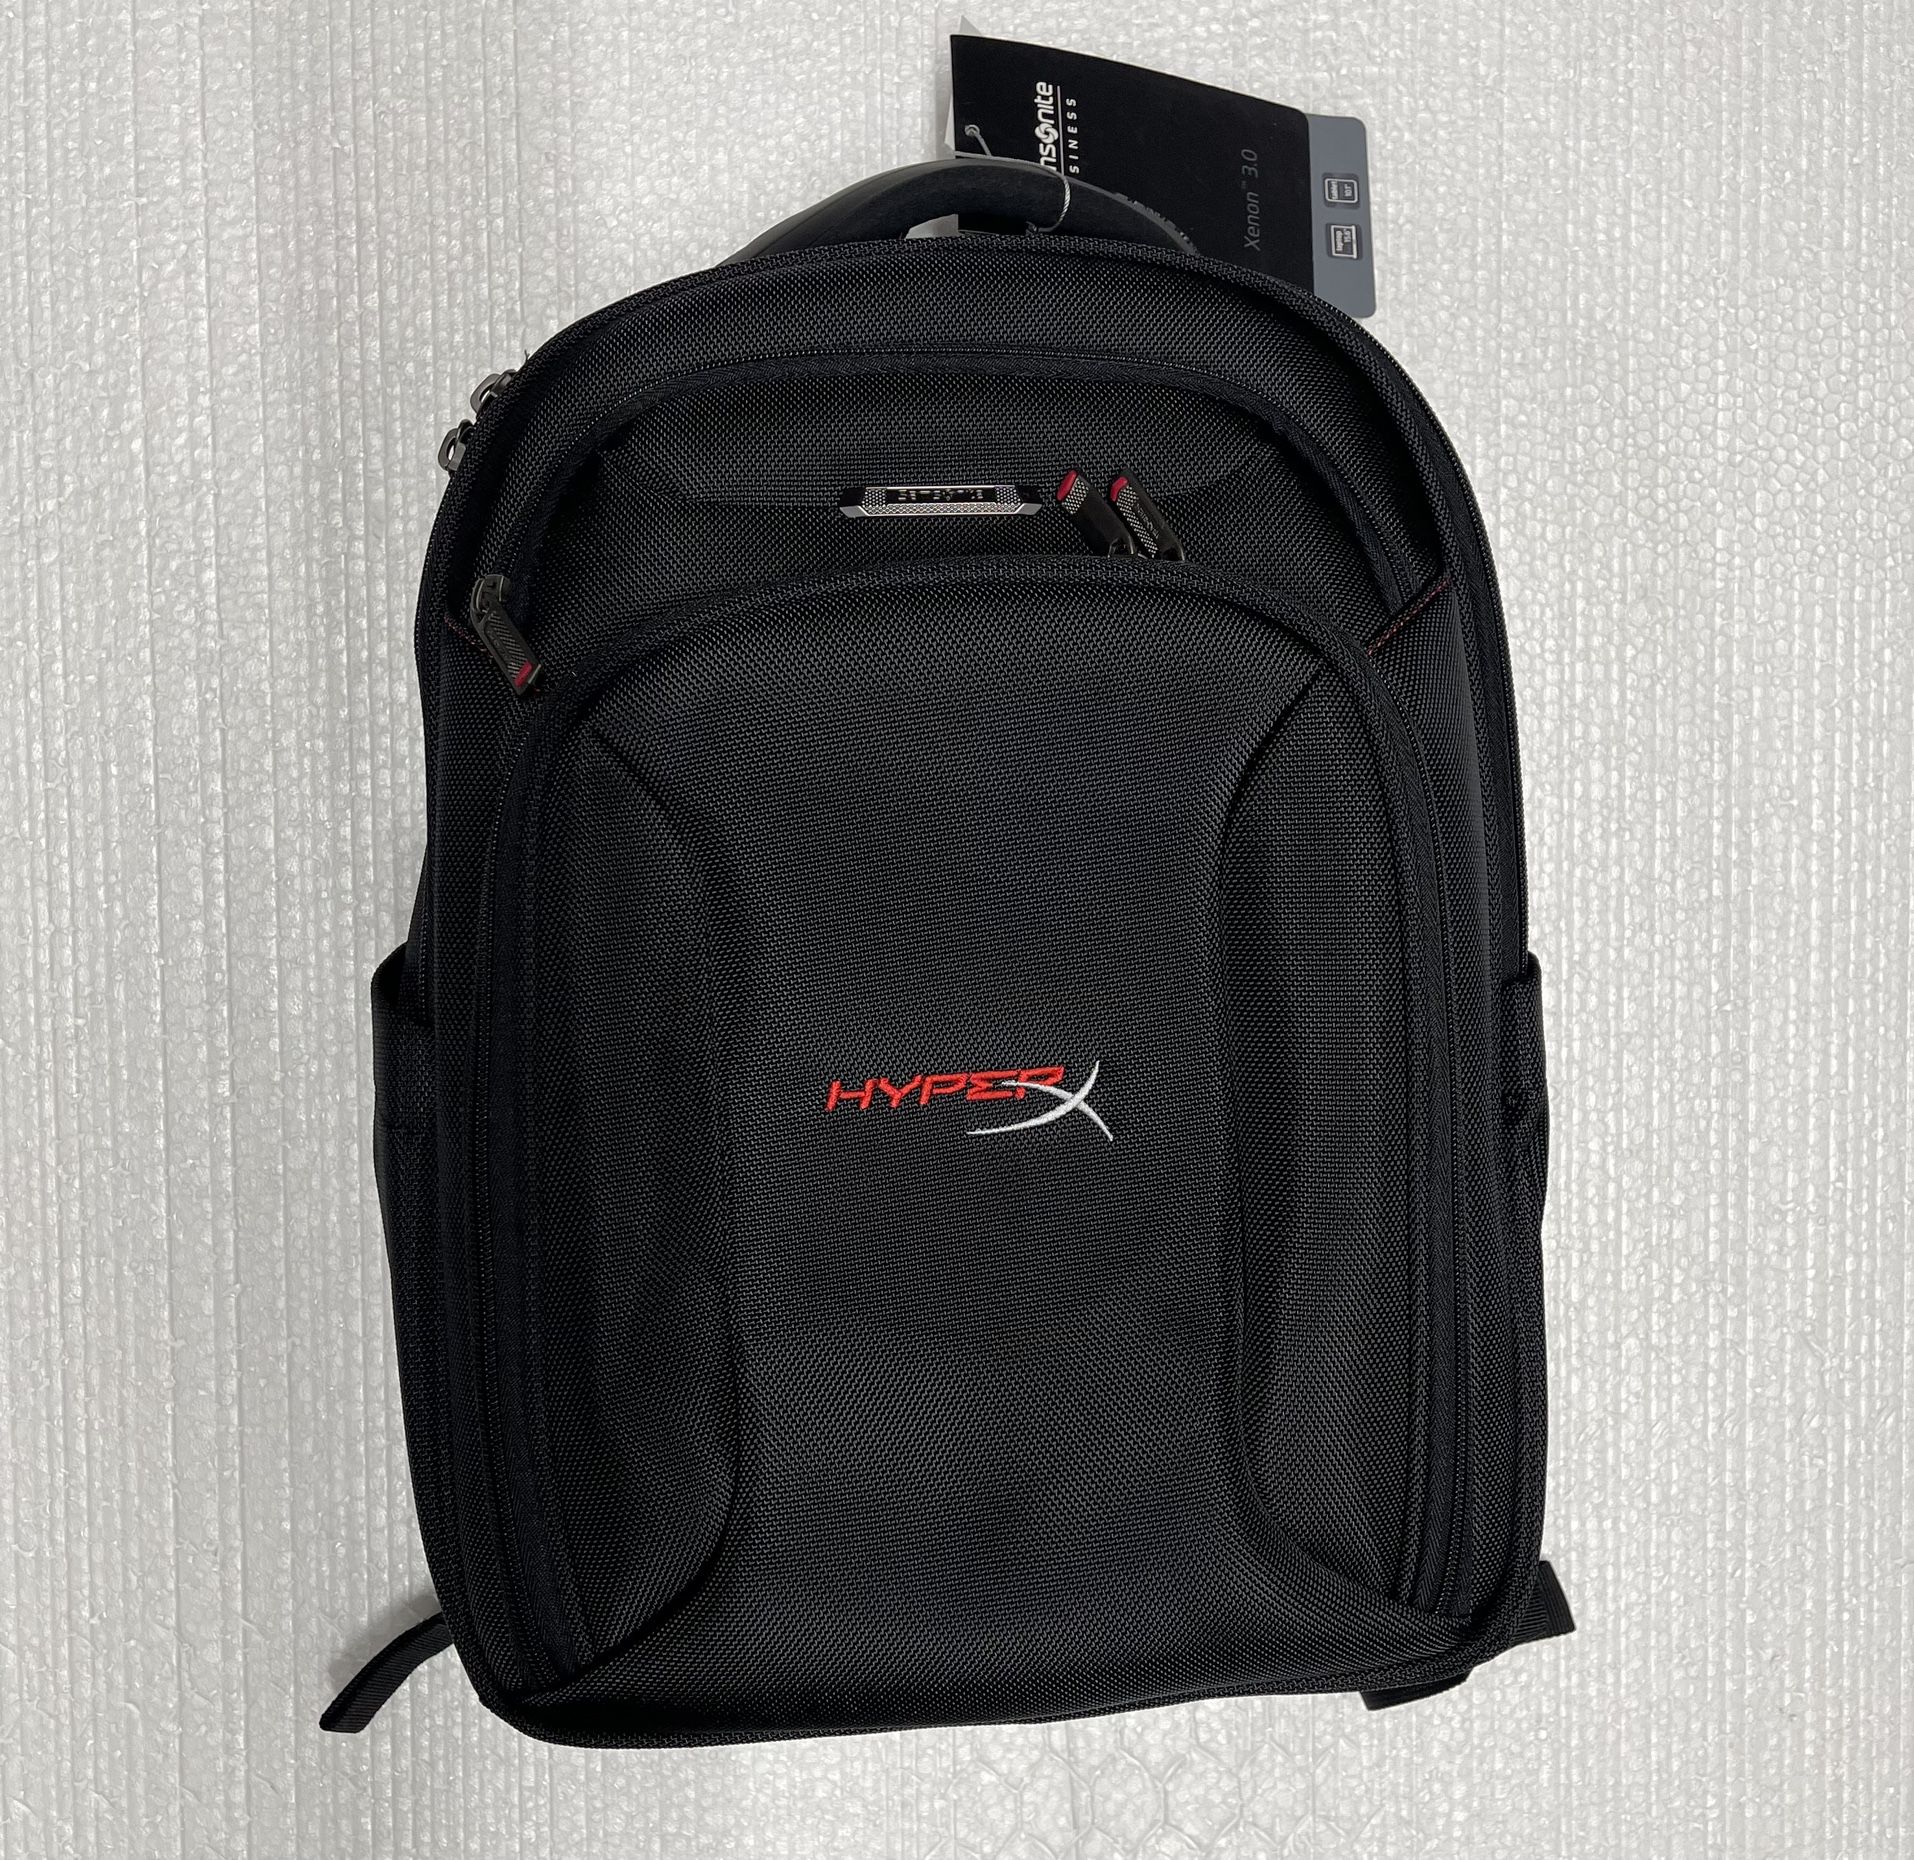 Backpack For Laptop Samsonite 